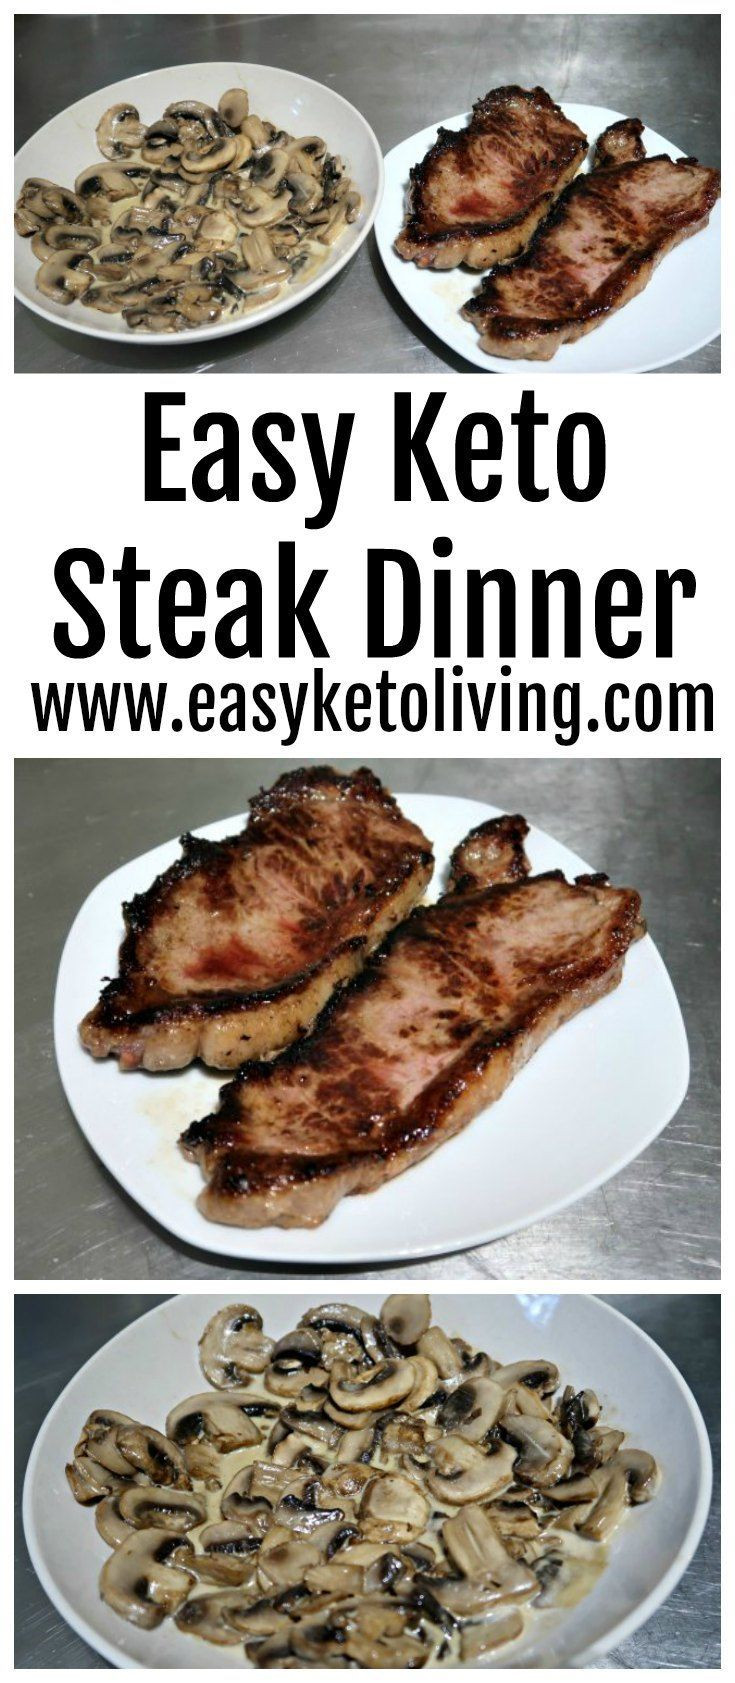 Keto Diet Recipes Dinners Steak
 Keto Steak Dinner Recipe